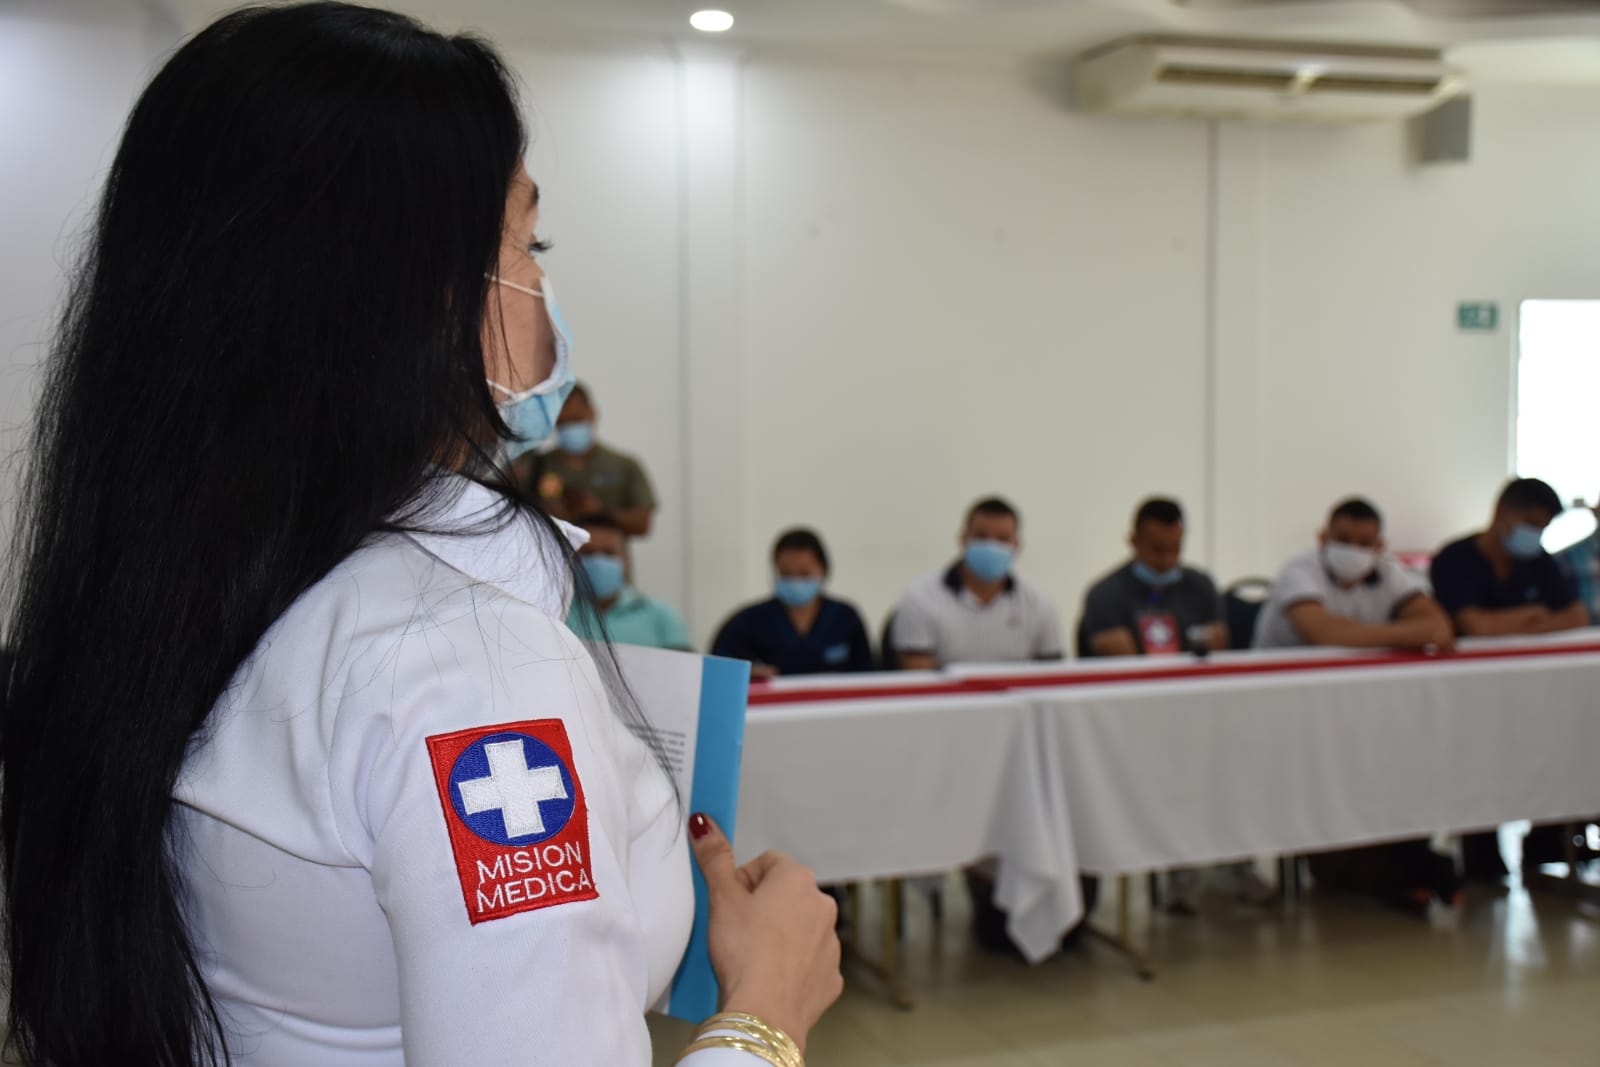 Misión médica se mantiene en riesgo debido a la confrontación armada en Arauca